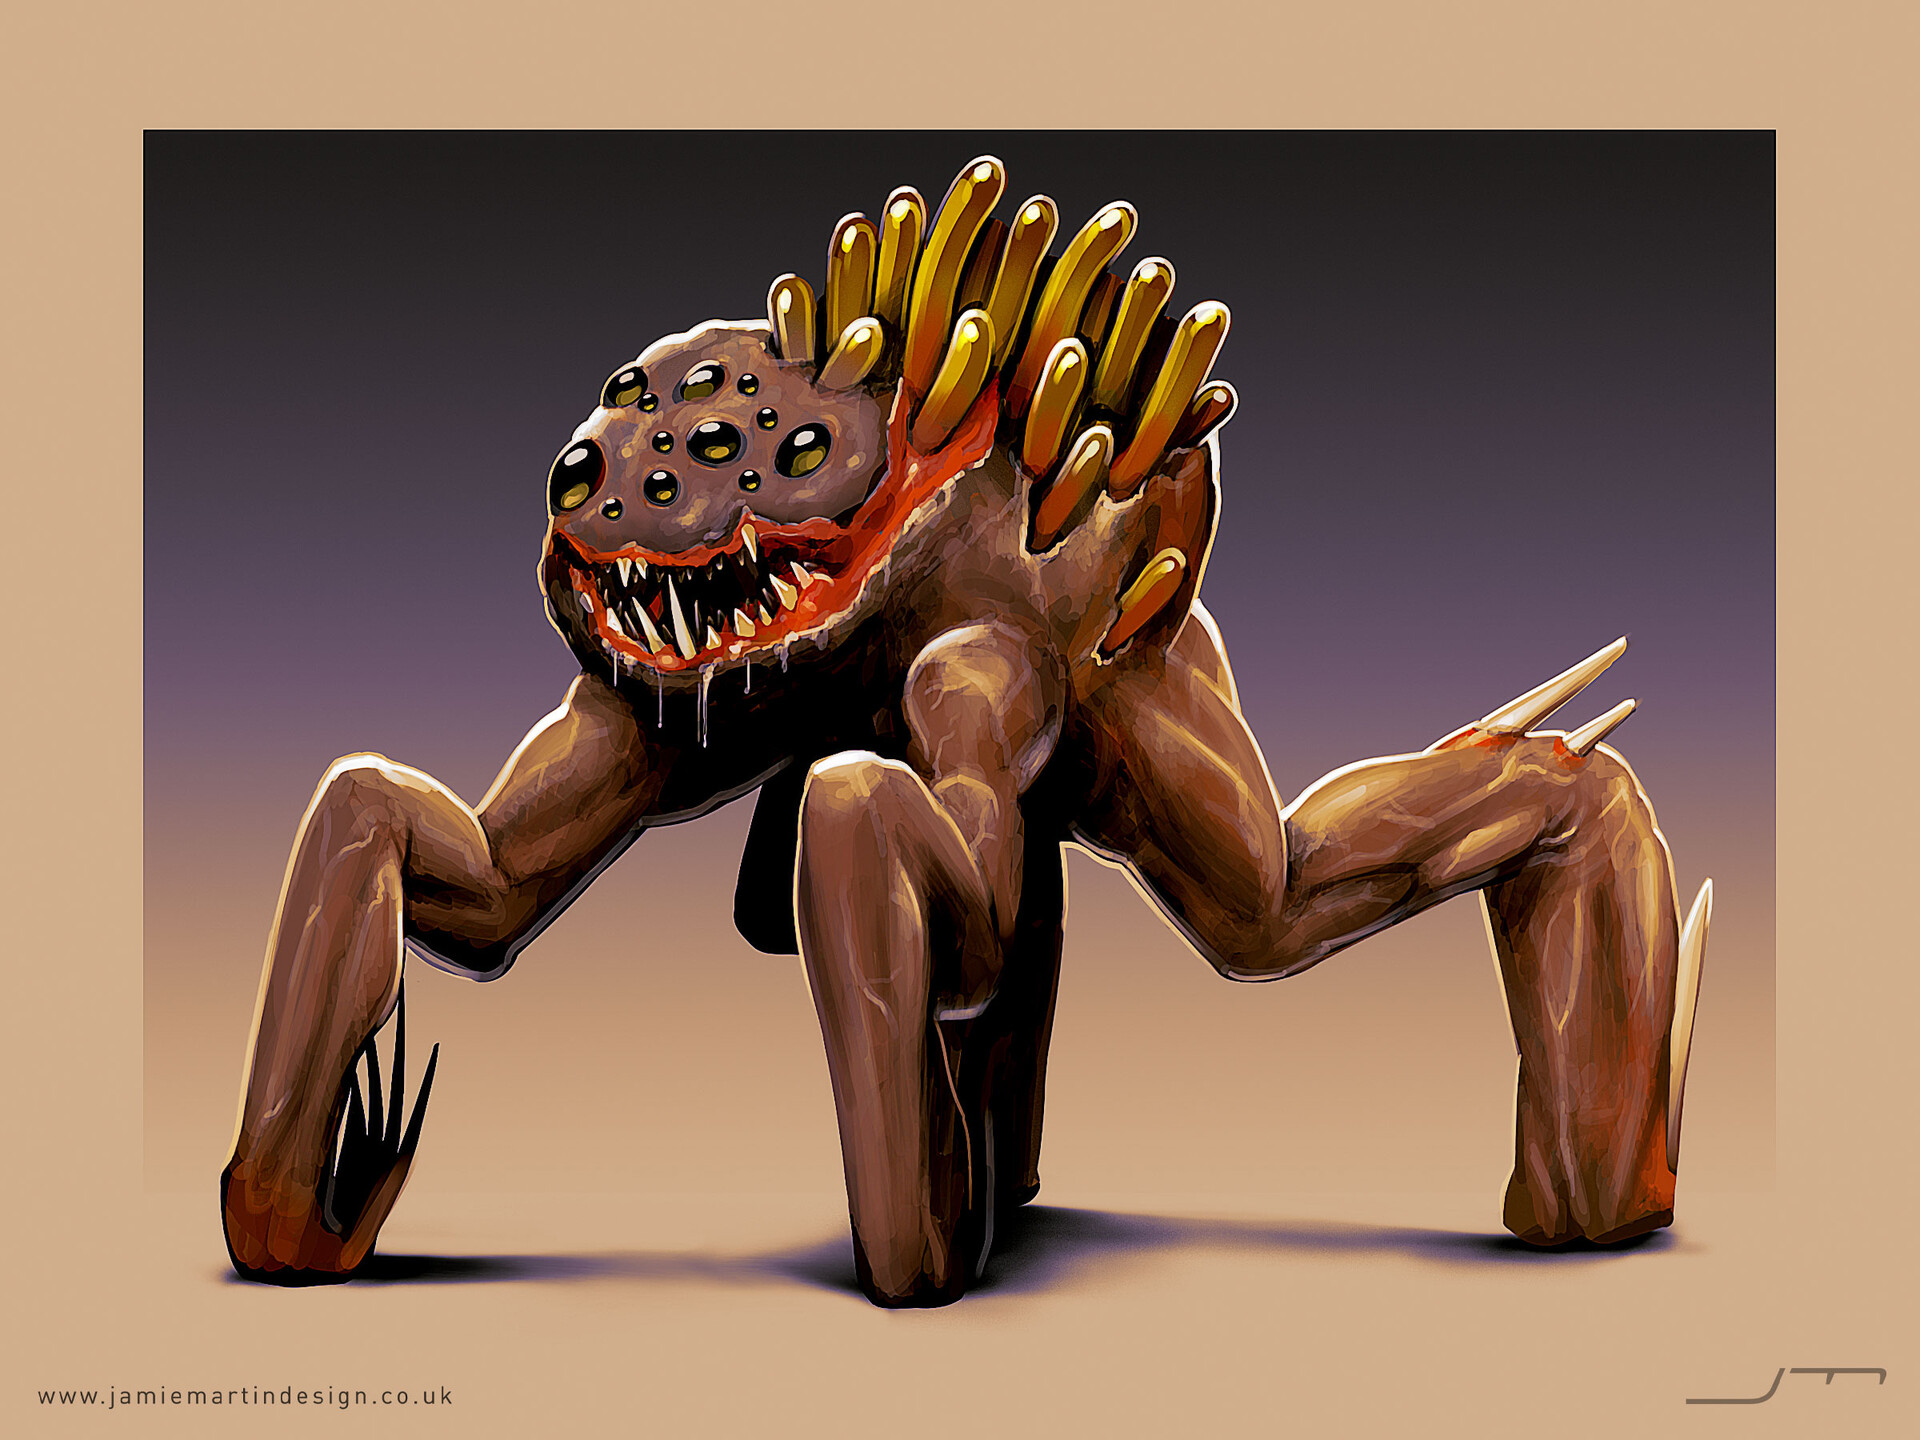 ArtStation - Enemy Creatures #2 - character concept art